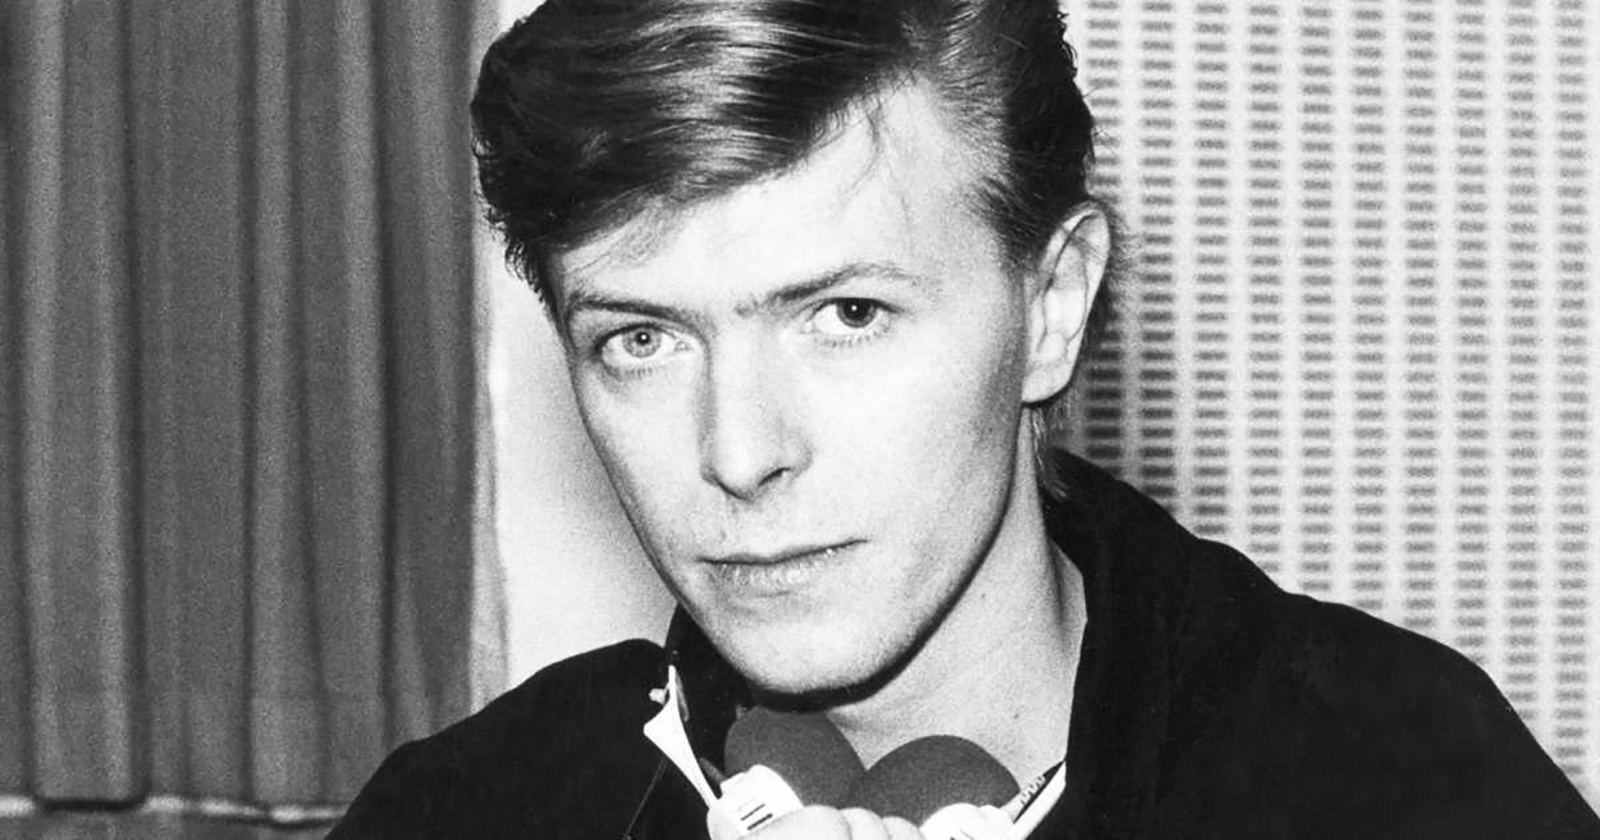 Publican nueva versión del cover de David Bowie para “Bang, Bang” Iggy Pop. Cusica Plus.